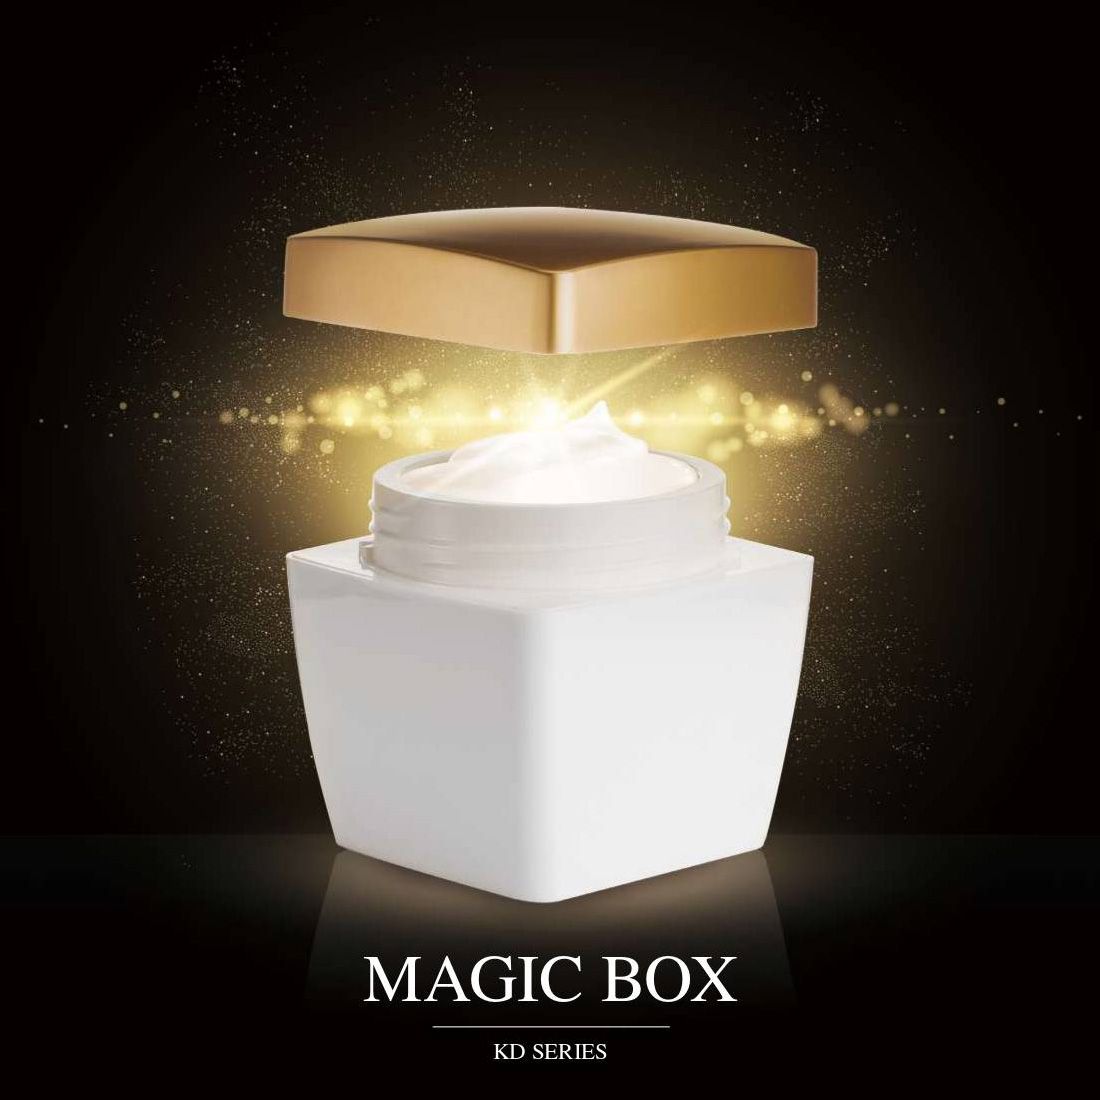 Magic Box (บรรจุภัณฑ์เครื่องสำอางและผลิตภัณฑ์ดูแลผิวอะคริลิคทรงสี่เหลี่ยมหรูหรา) เคดีซีรีส์